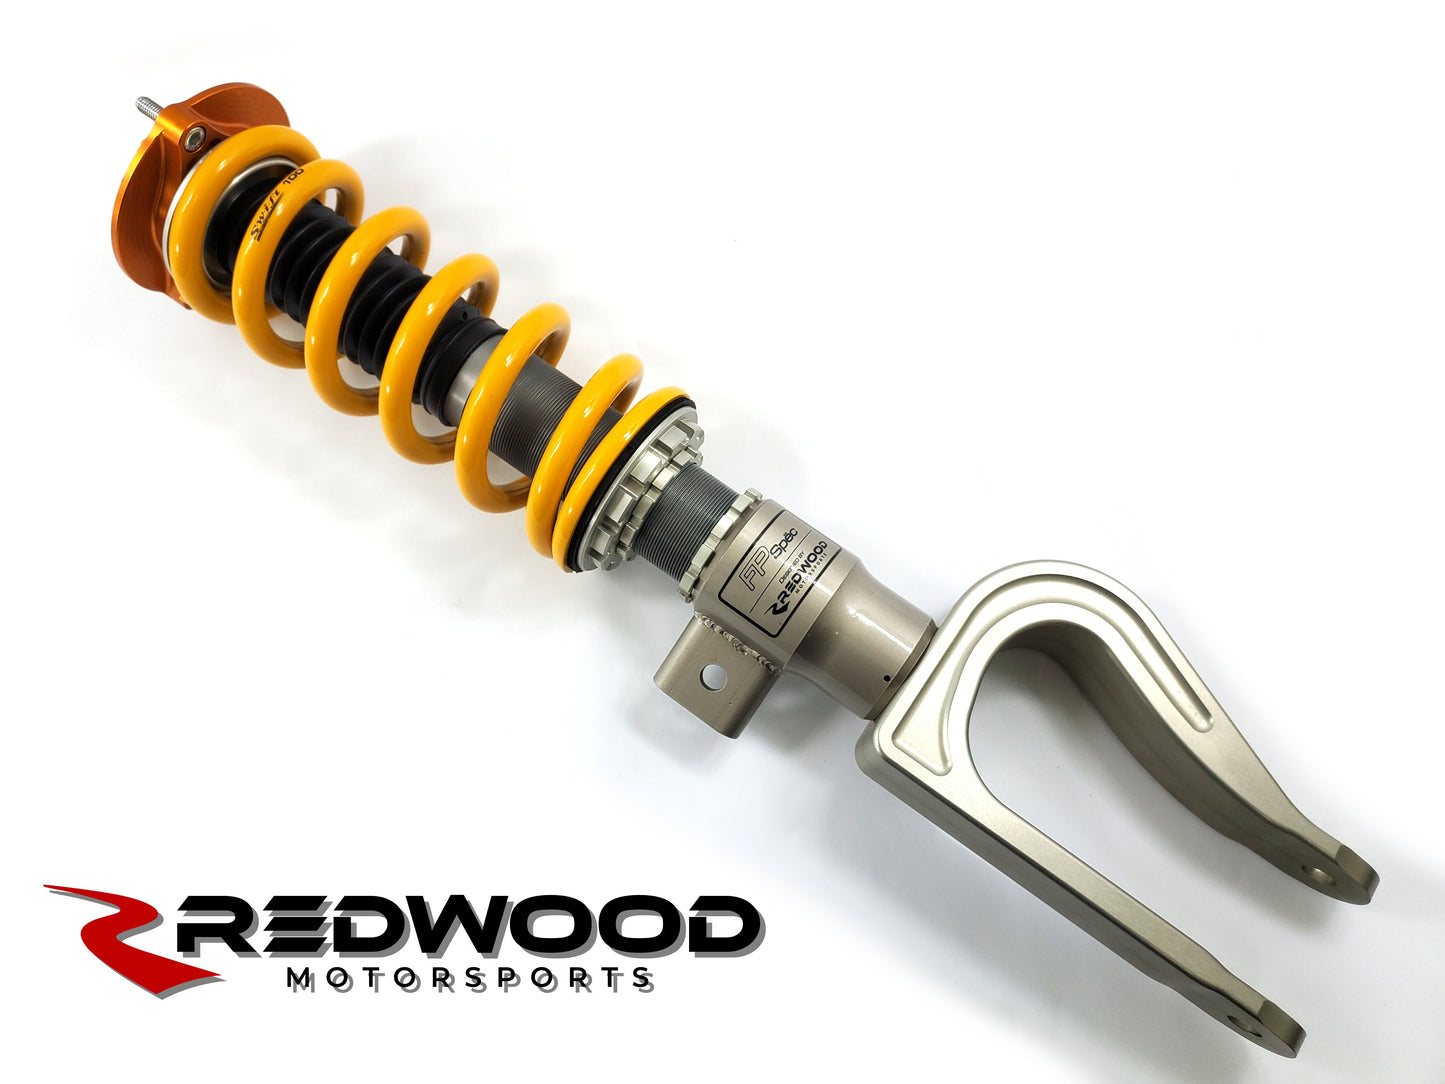 Redwood Motorsports - Model 3 Öhlins DFV coilovers - RWD